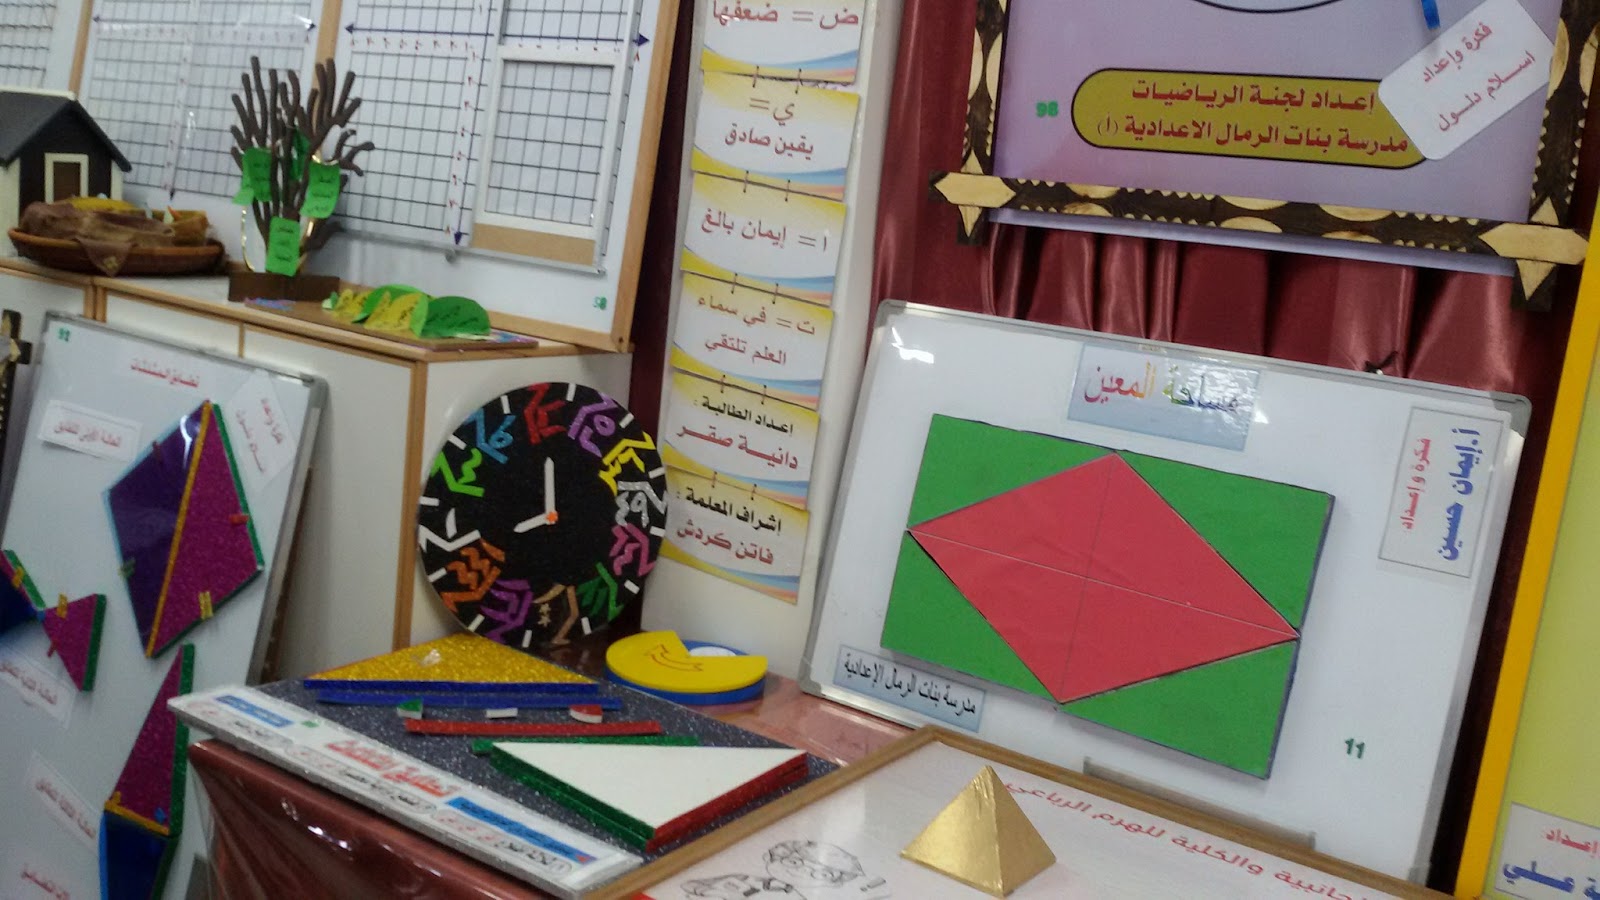 معرض وسائل تعليمية للرياضيات مدرسة بنات الرمال الاعدادية أ مدونة نبيل